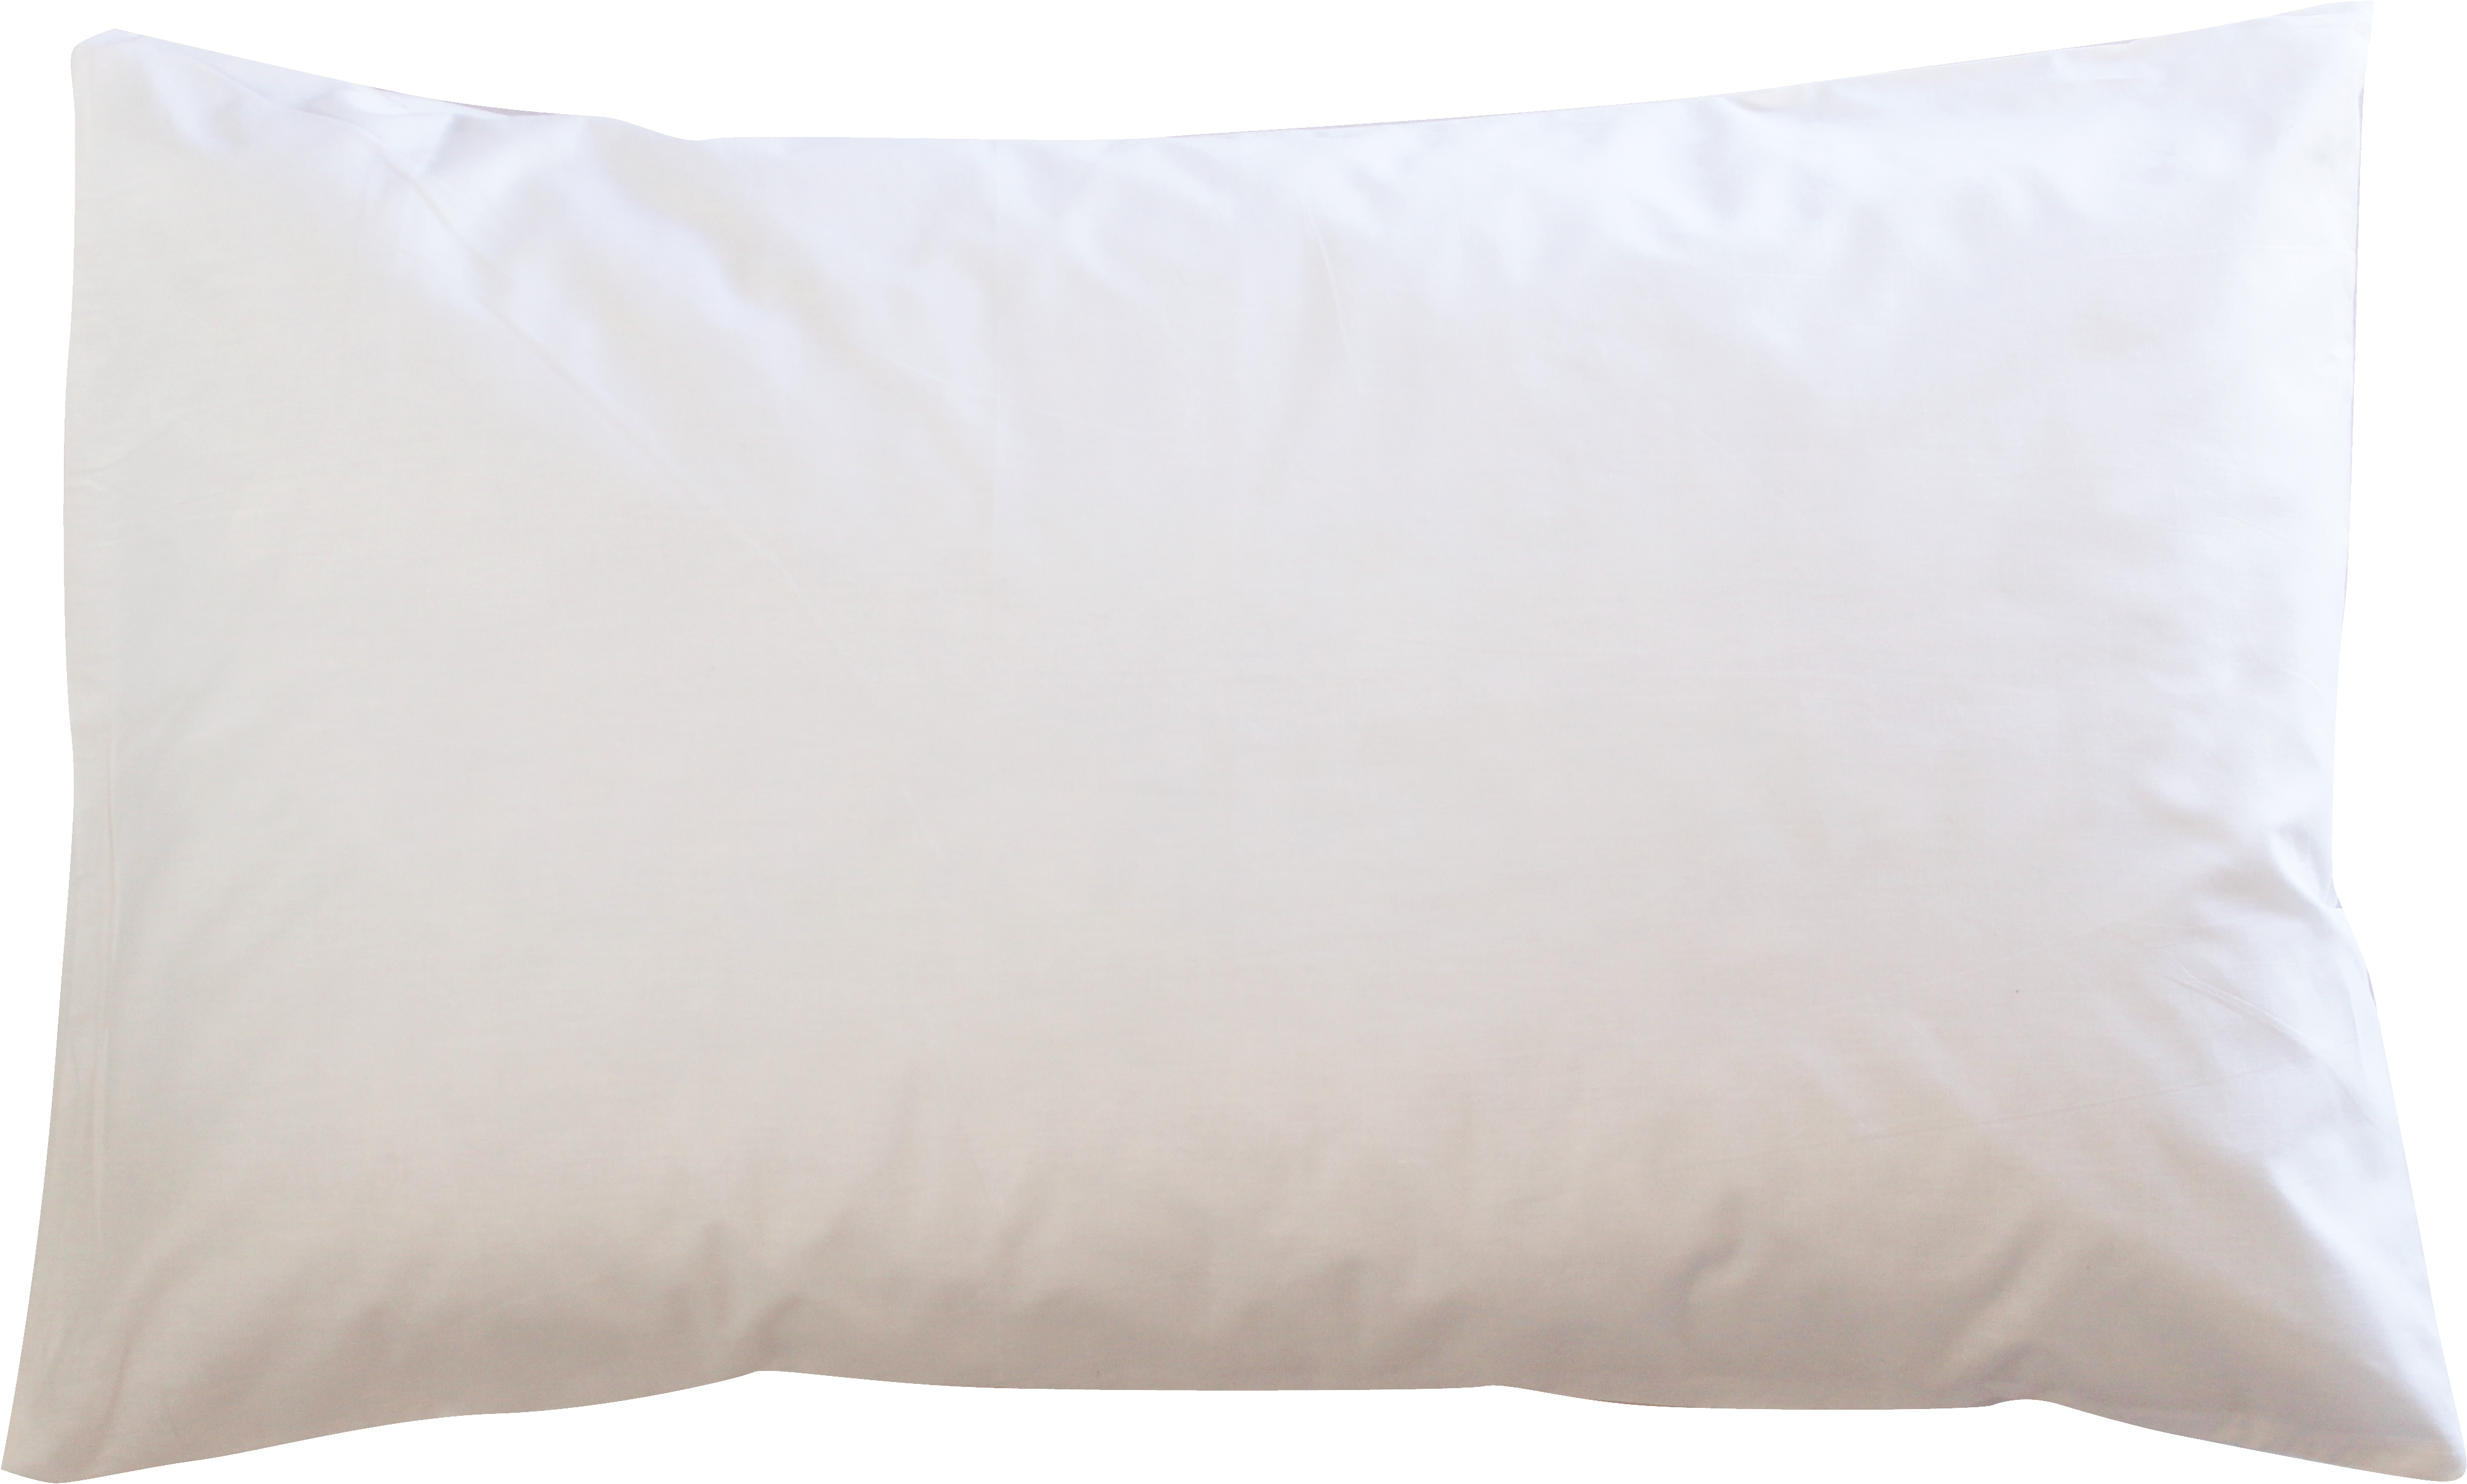 Pillow clipart long pillow, Pillow long pillow Transparent.